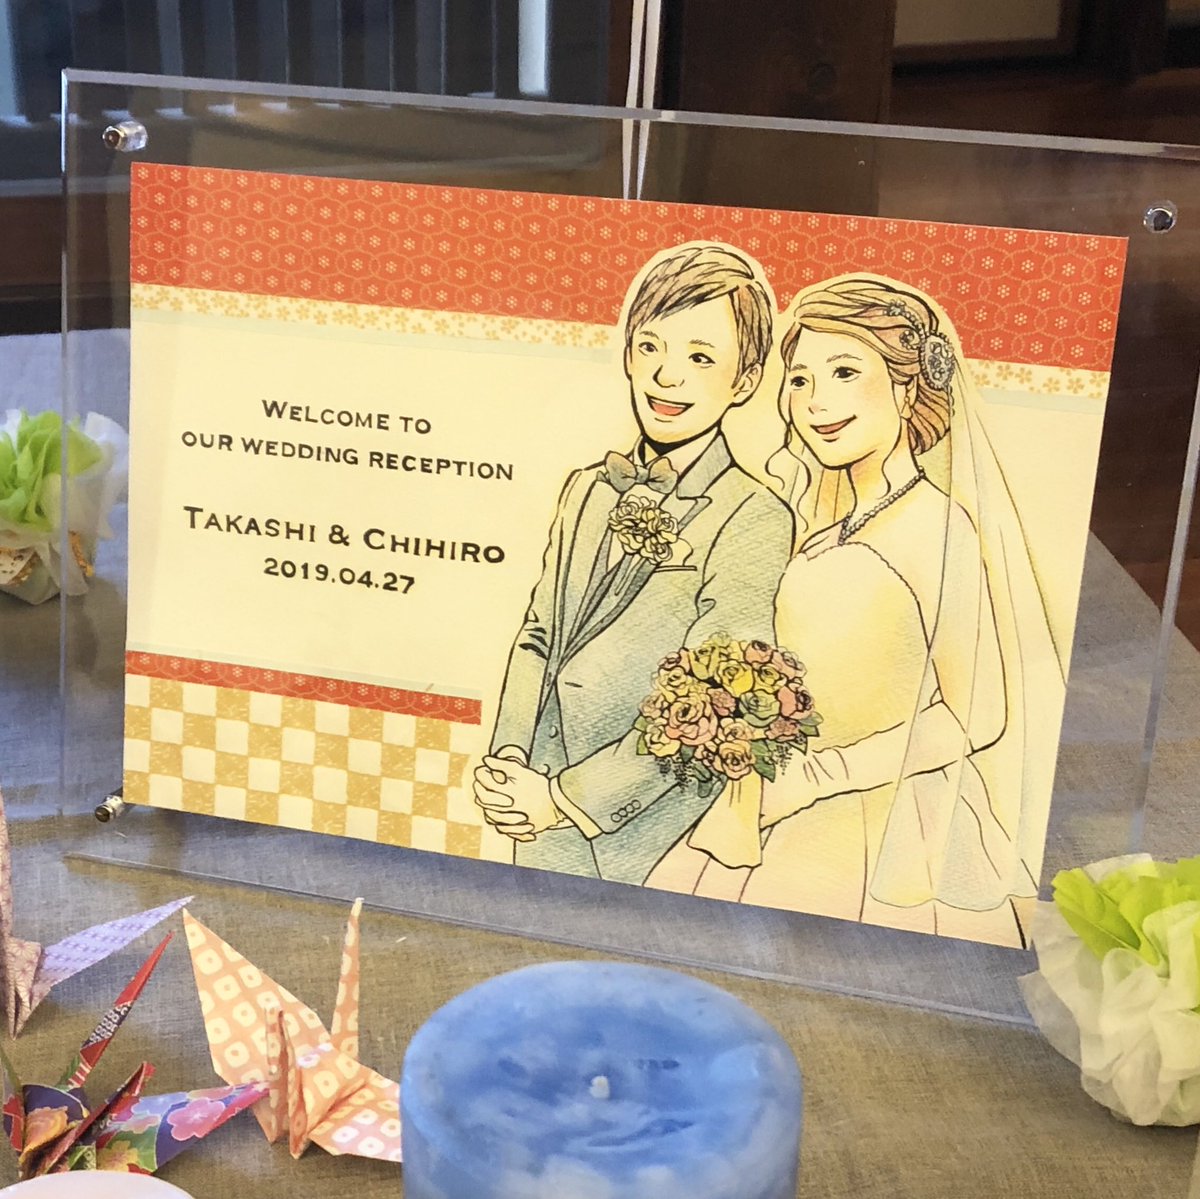 🌷お仕事報告🌷
小学校からの友人のウェルカムボードを描かせていただきました!
結婚おめでとう☺️✨お幸せに! 